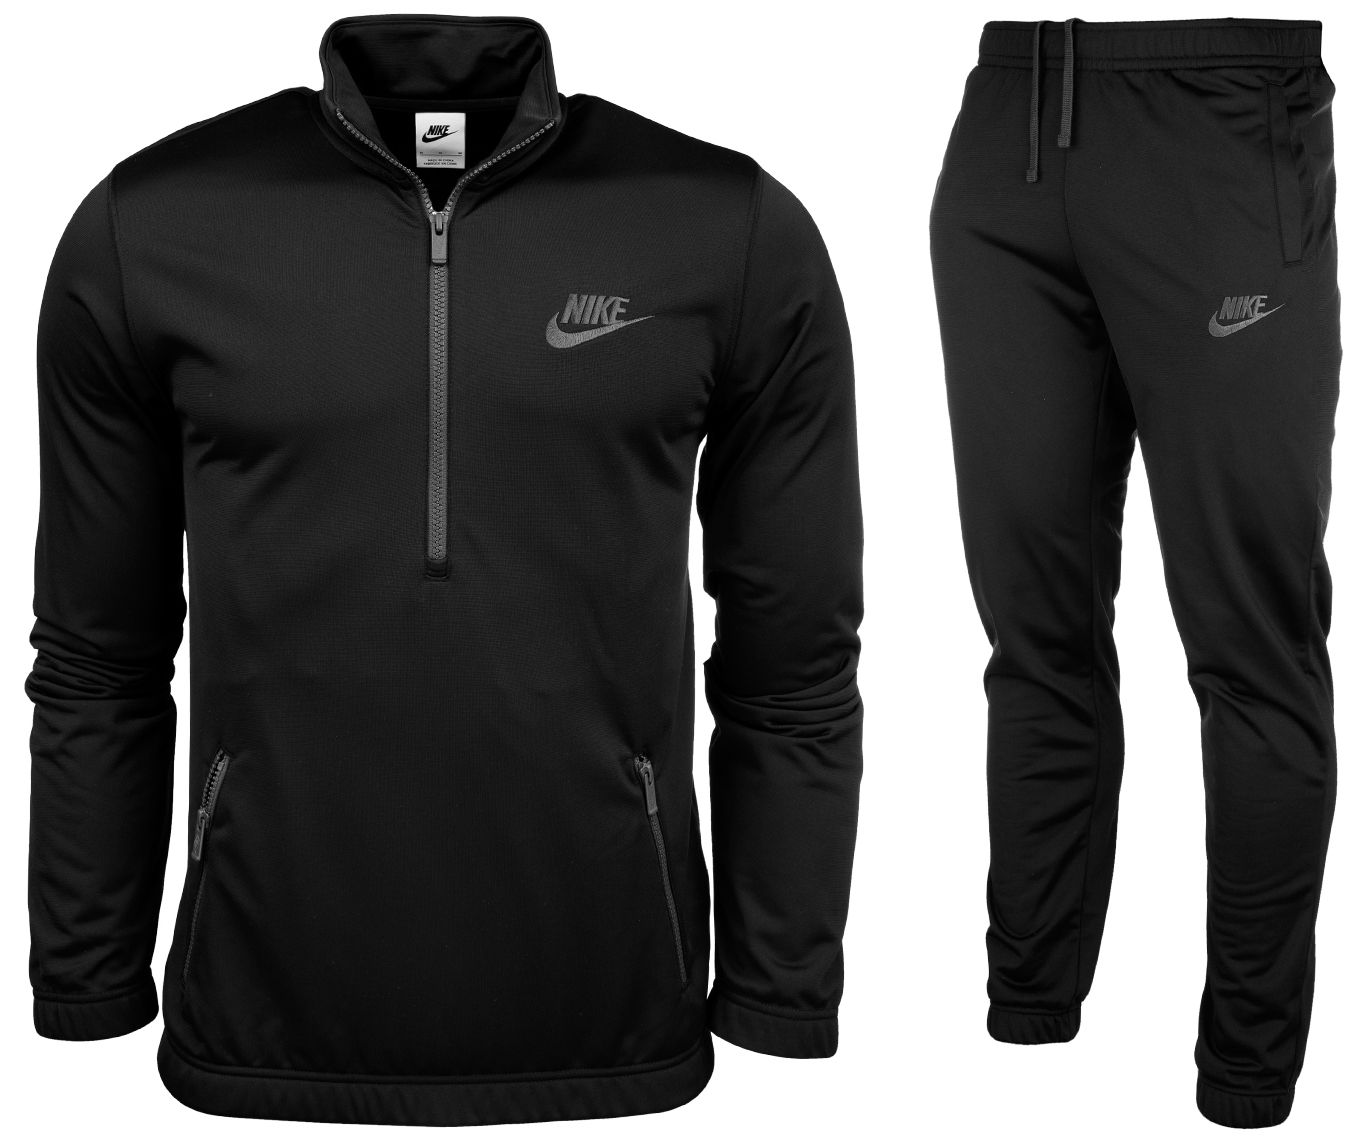 Nike Trening pentru bărbați Club Pk Trk Suit Basic DM6845 010